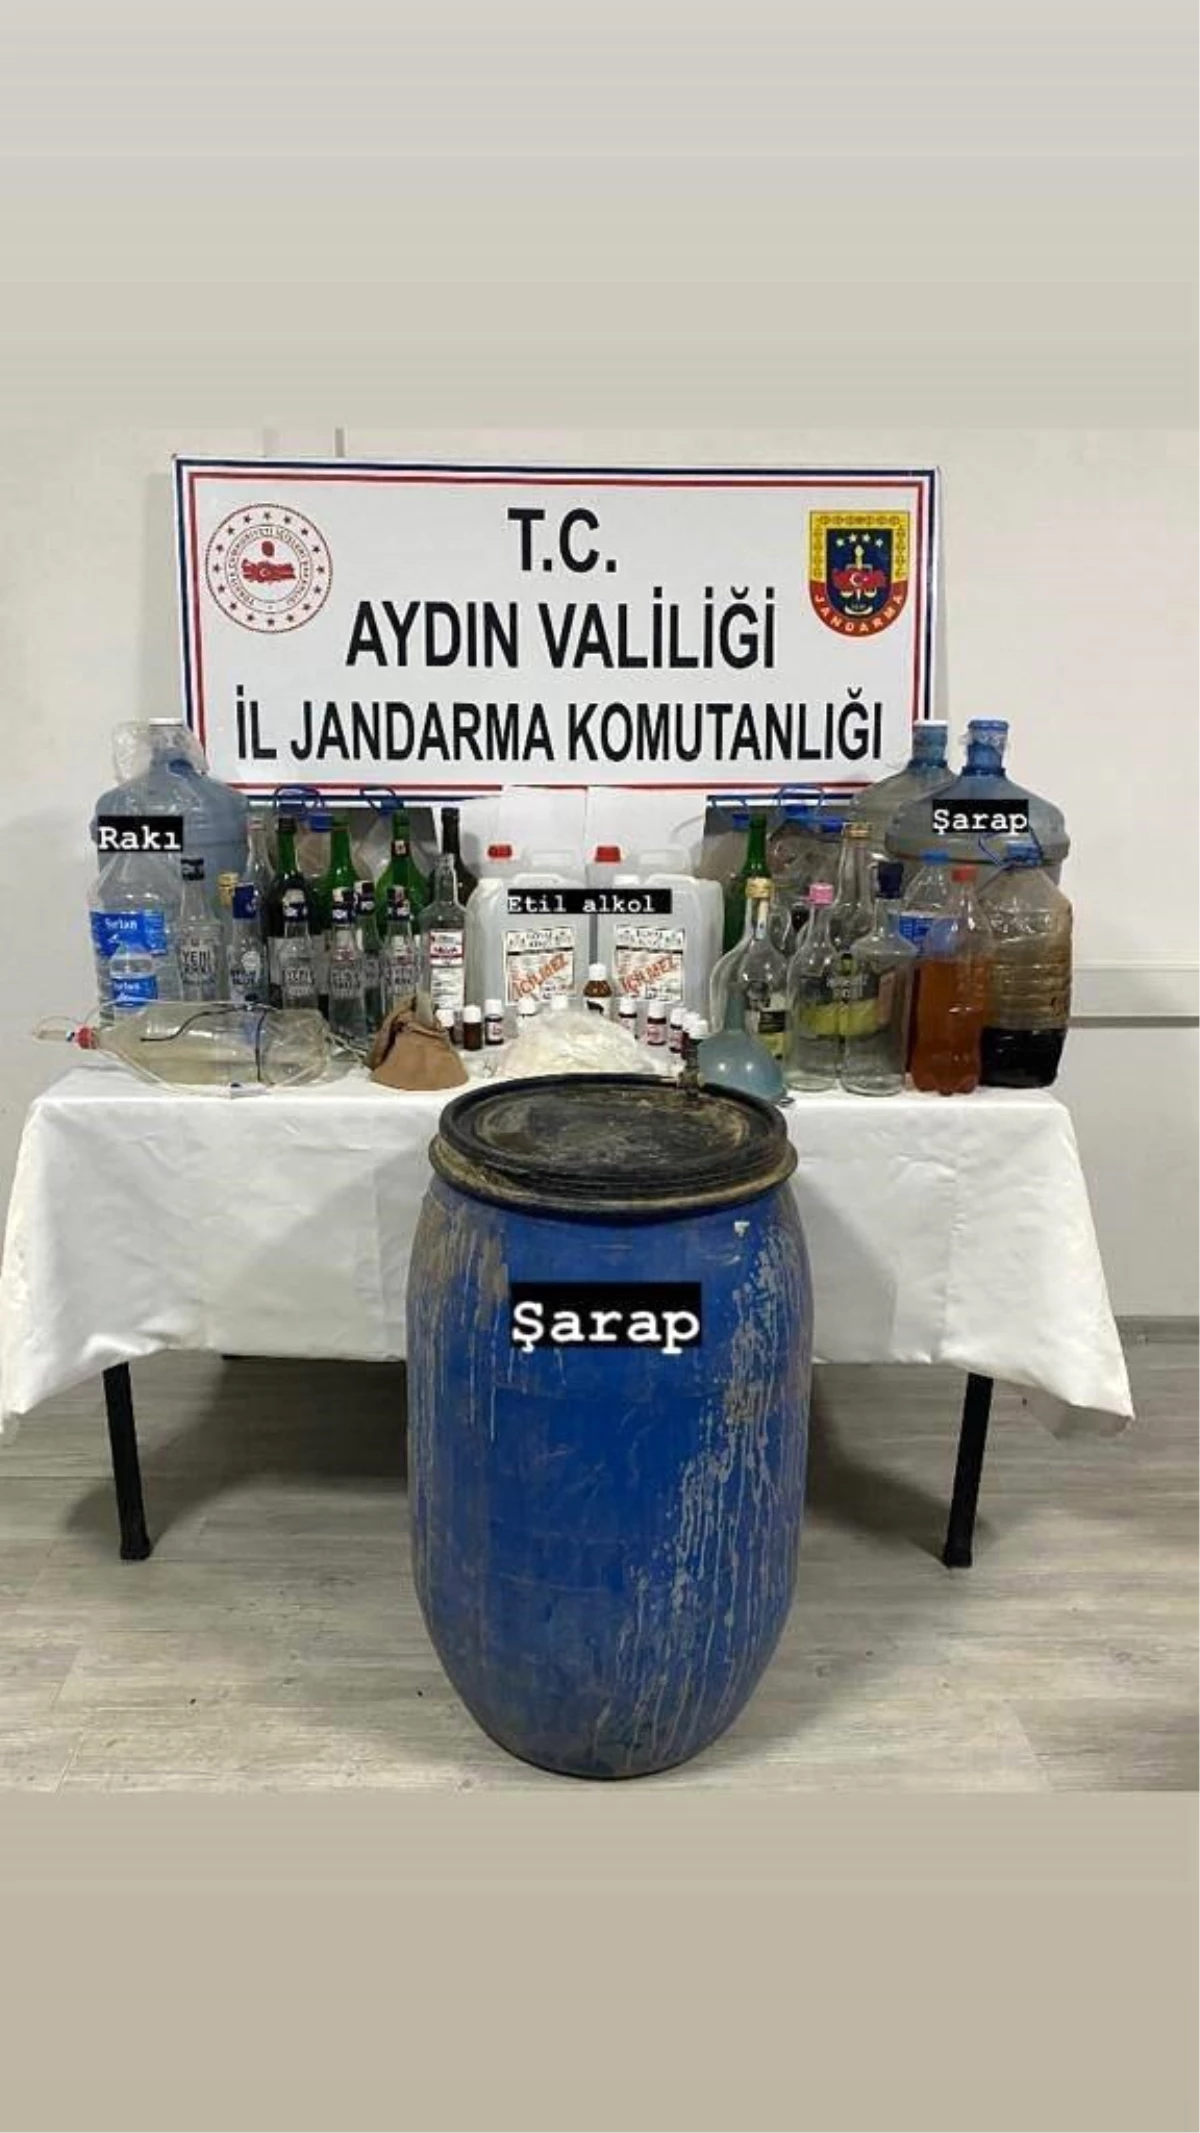 Aydın’da Geçersiz Alkol Operasyonu: 290 Litre Uydurma Alkol Ele Geçirildi